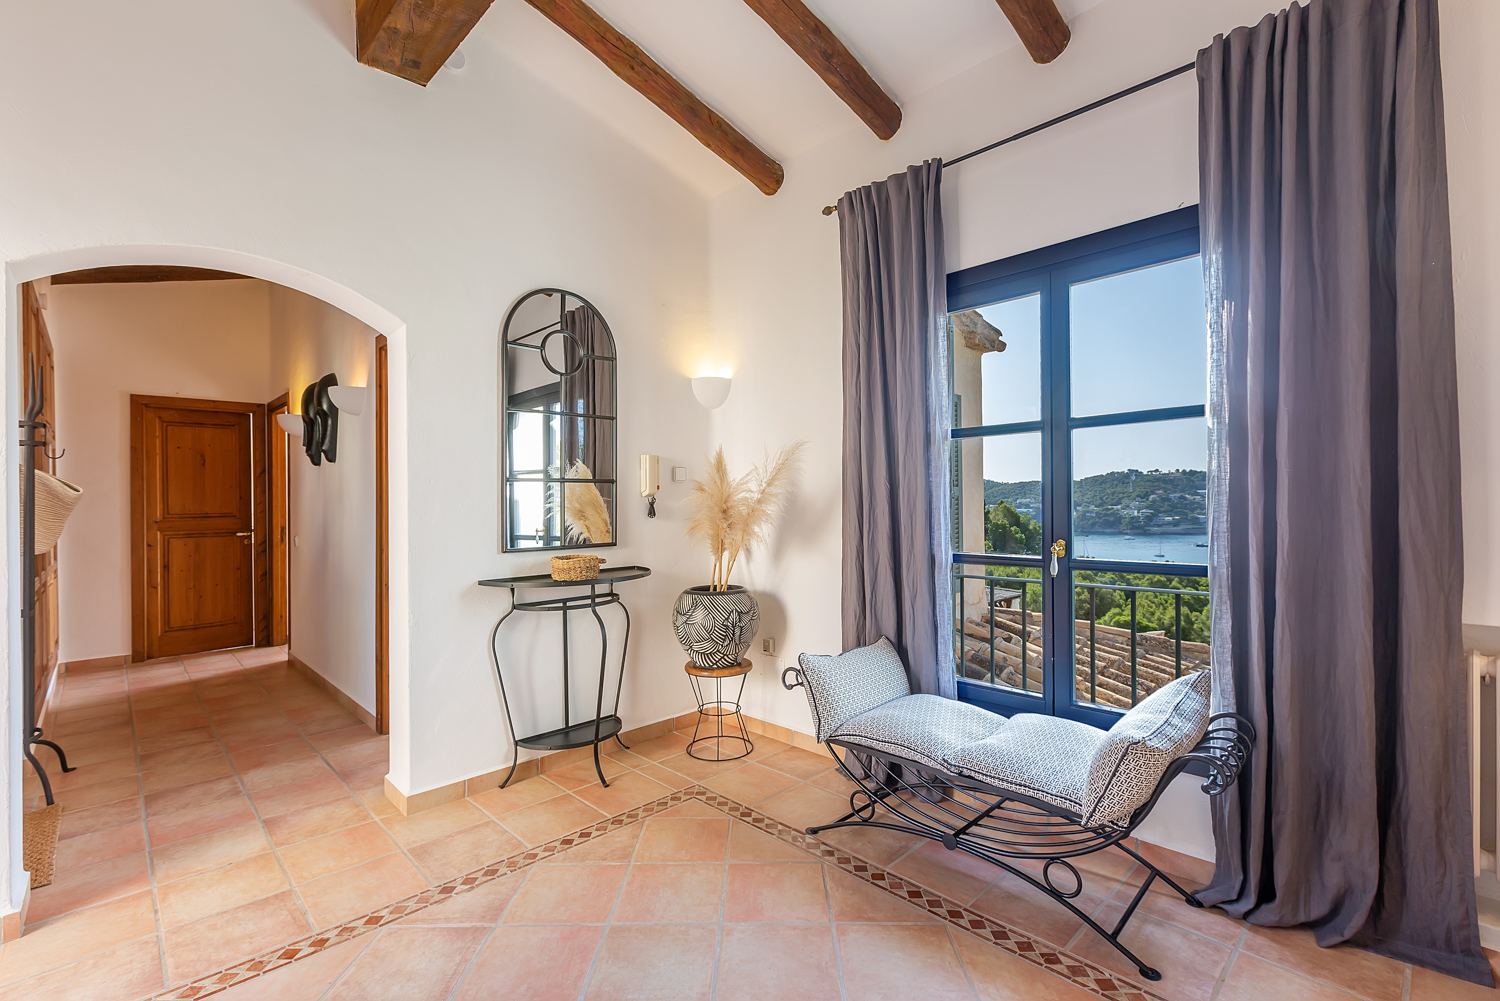 Superb villa with sea views of Camp de Mar